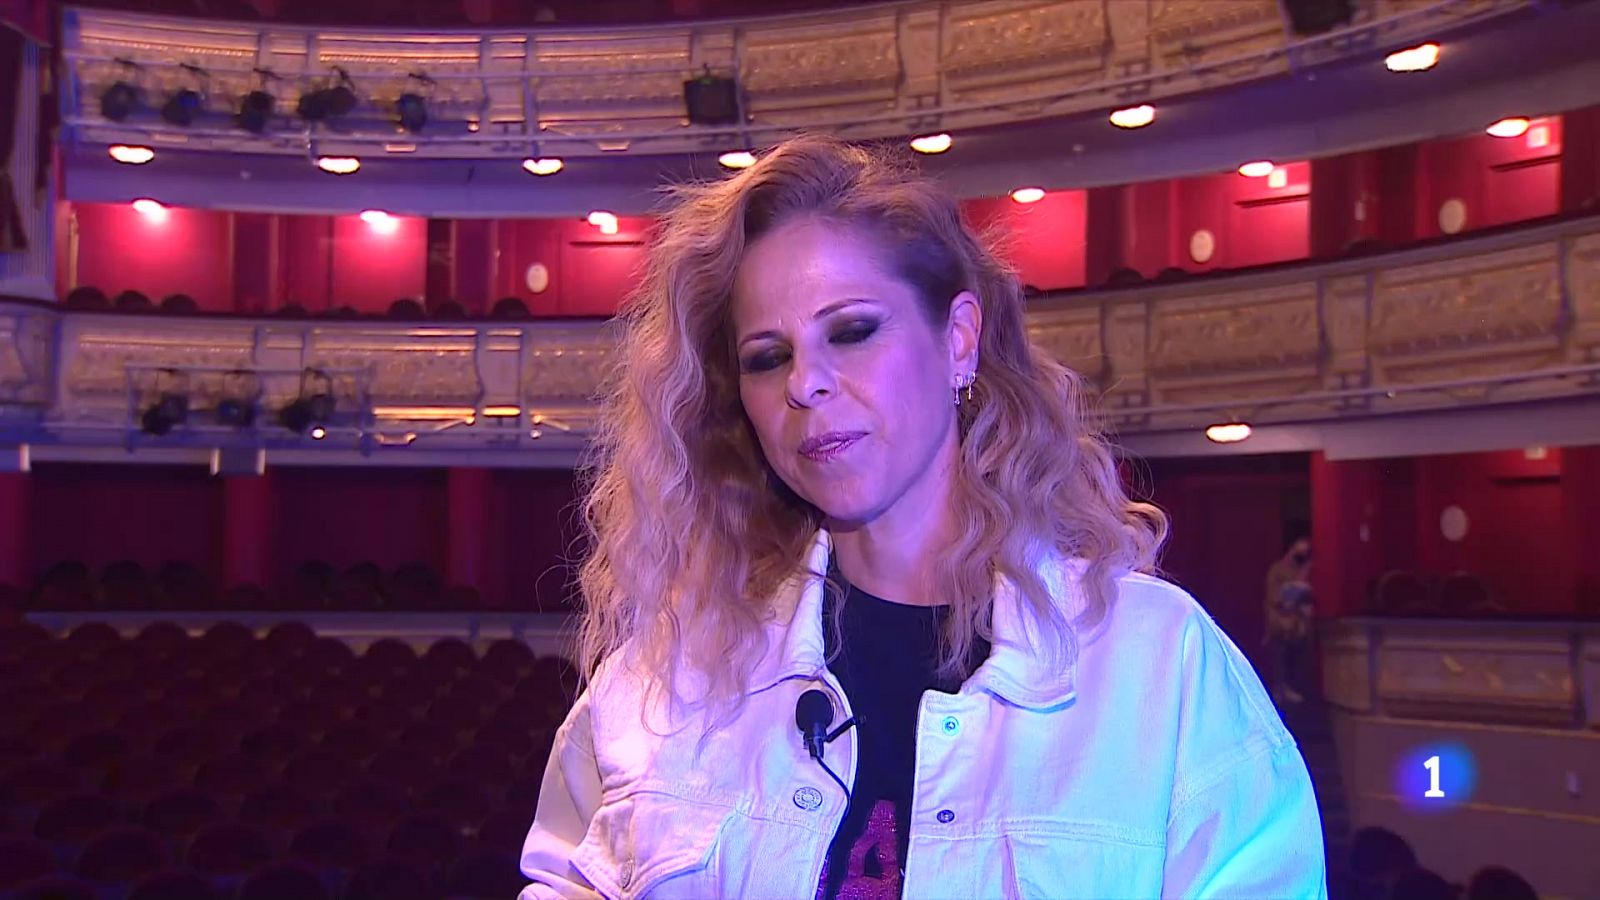 Pastora Soler arranca su gira y lo hace sobre el escenario del Teatro Real - RTVE.es